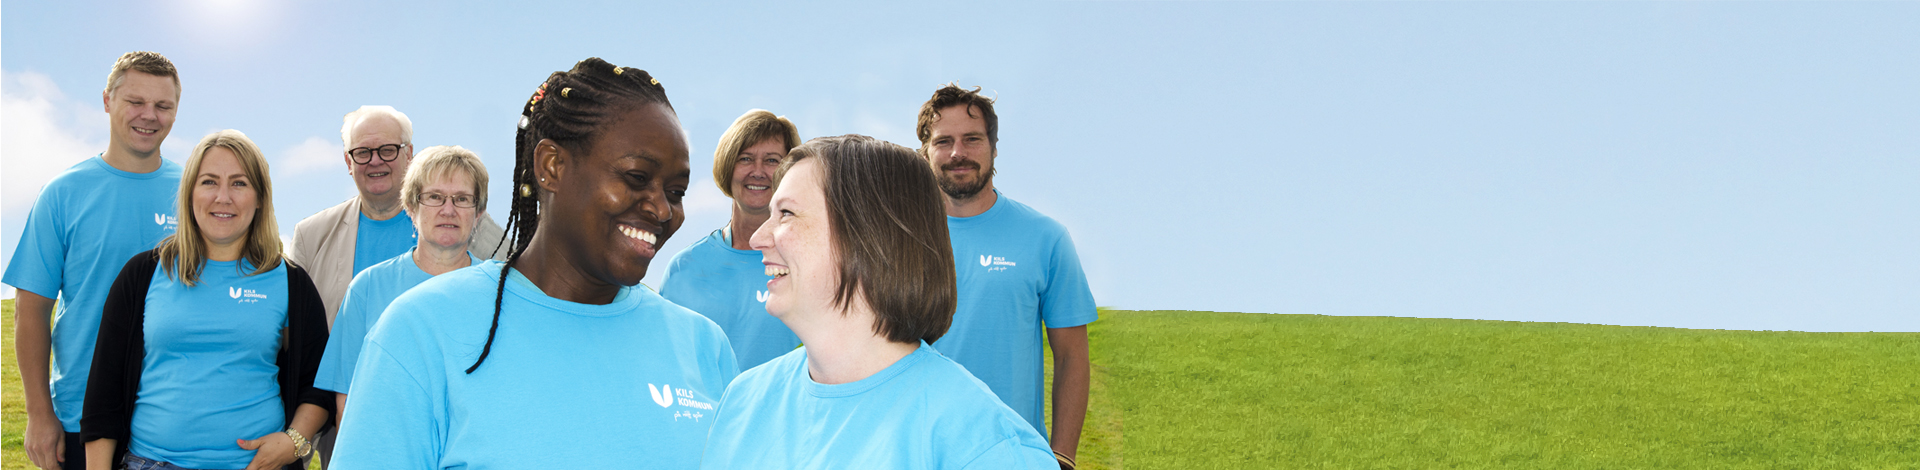 Människor i blå t-shirtar med Kils kommuns logotype 